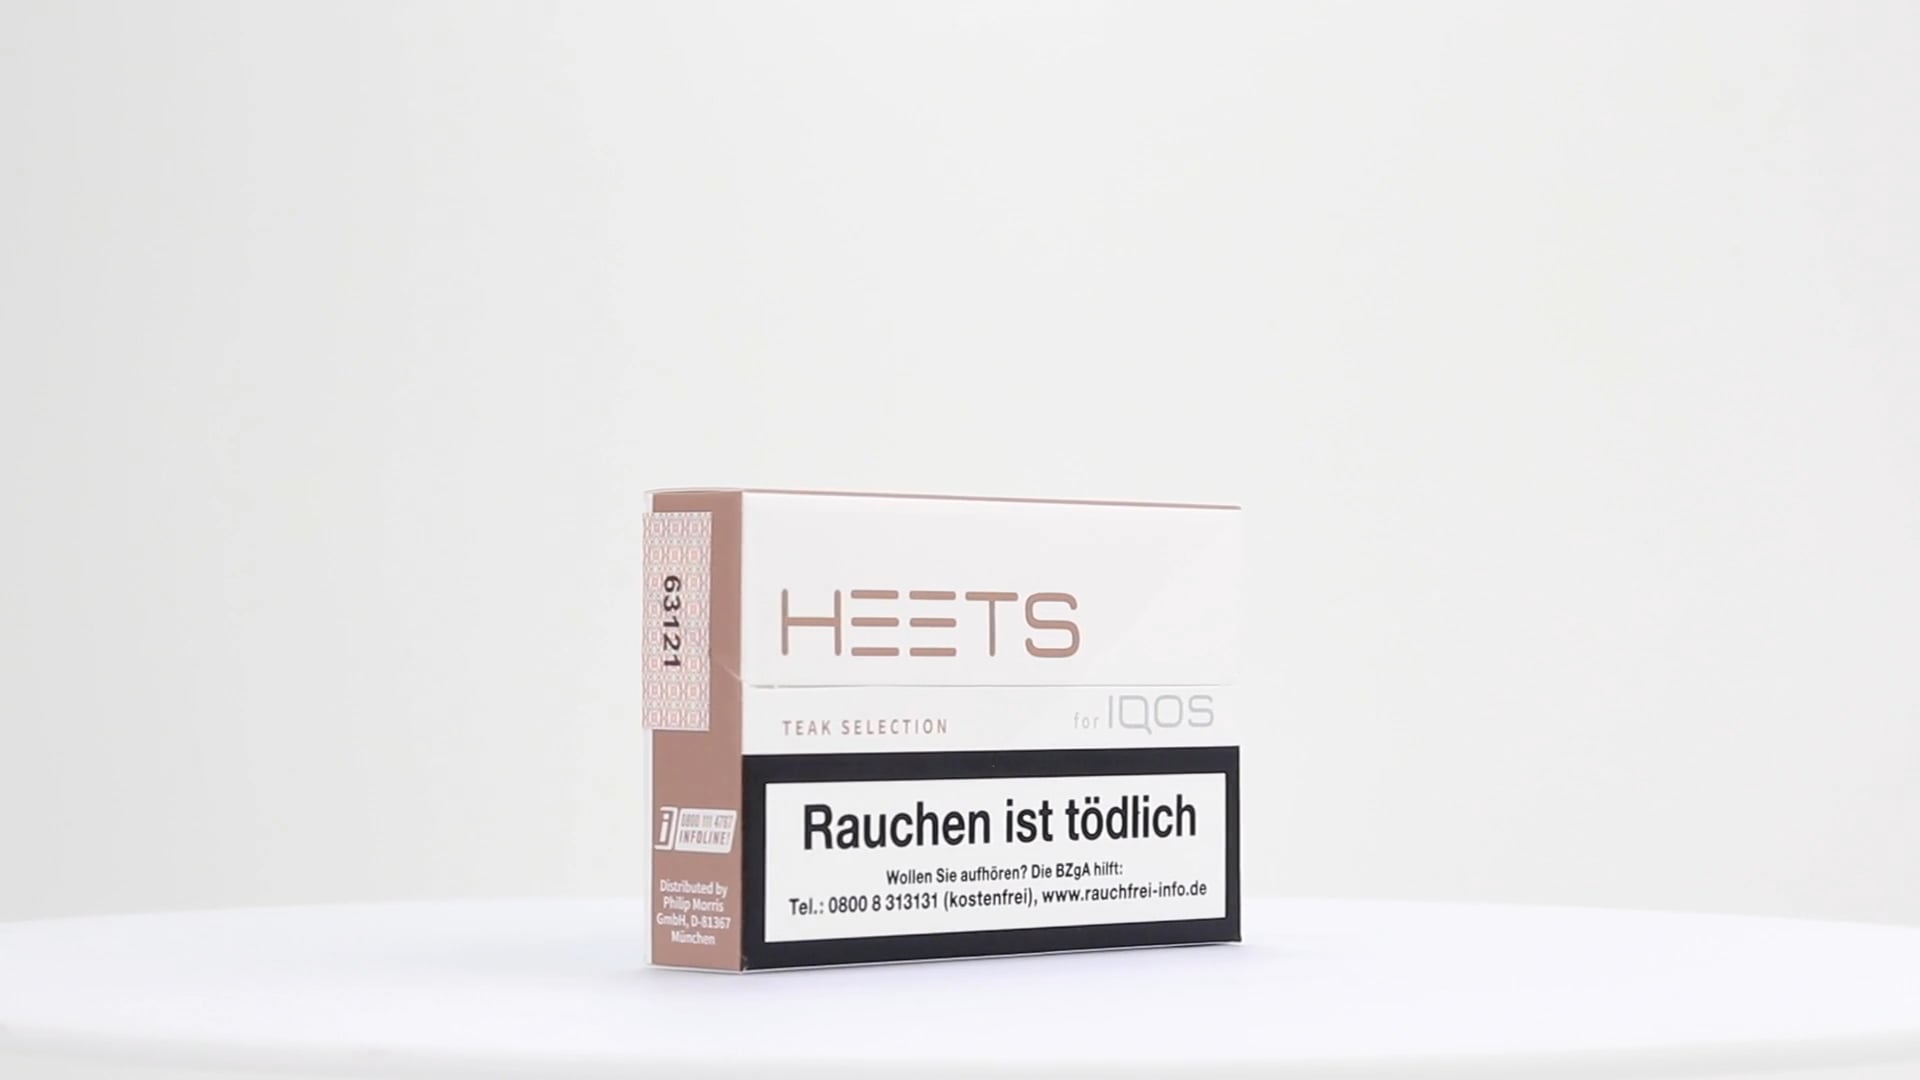 IQOS Heets Teak Selection, Alle Zigaretten, Zigaretten